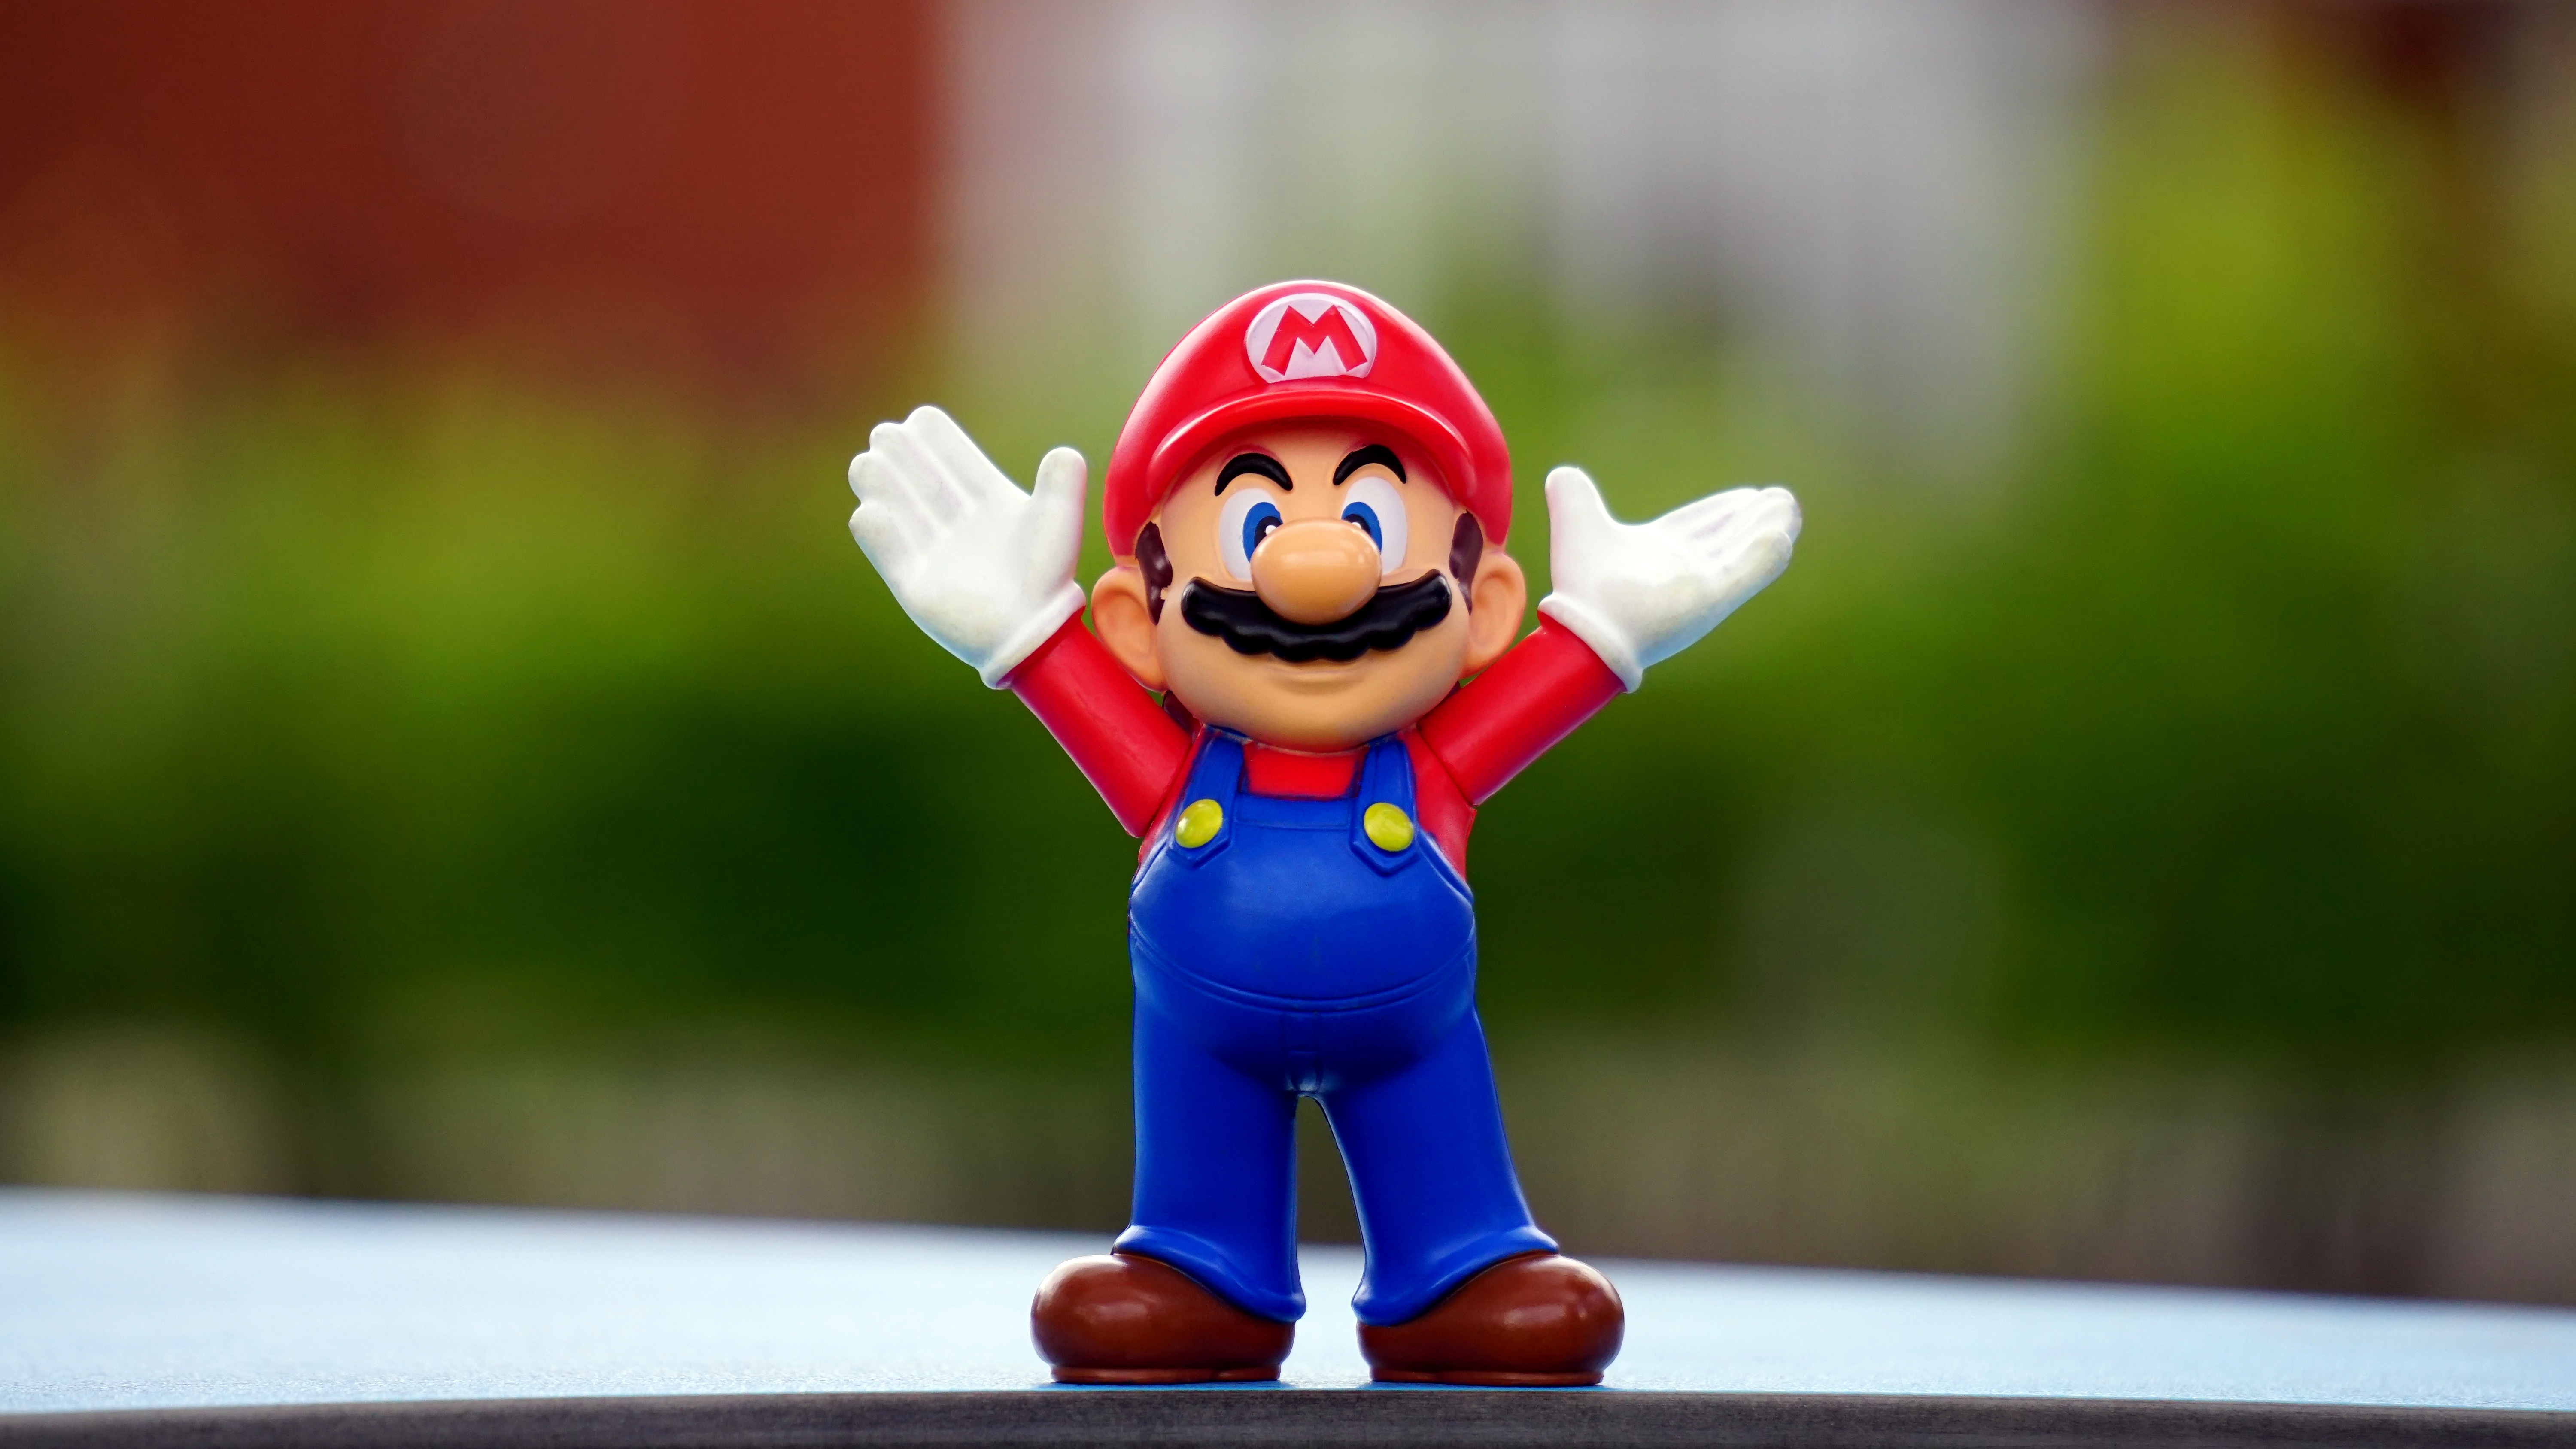 Boneco do Mario (Nintendo) com os braços pro ar